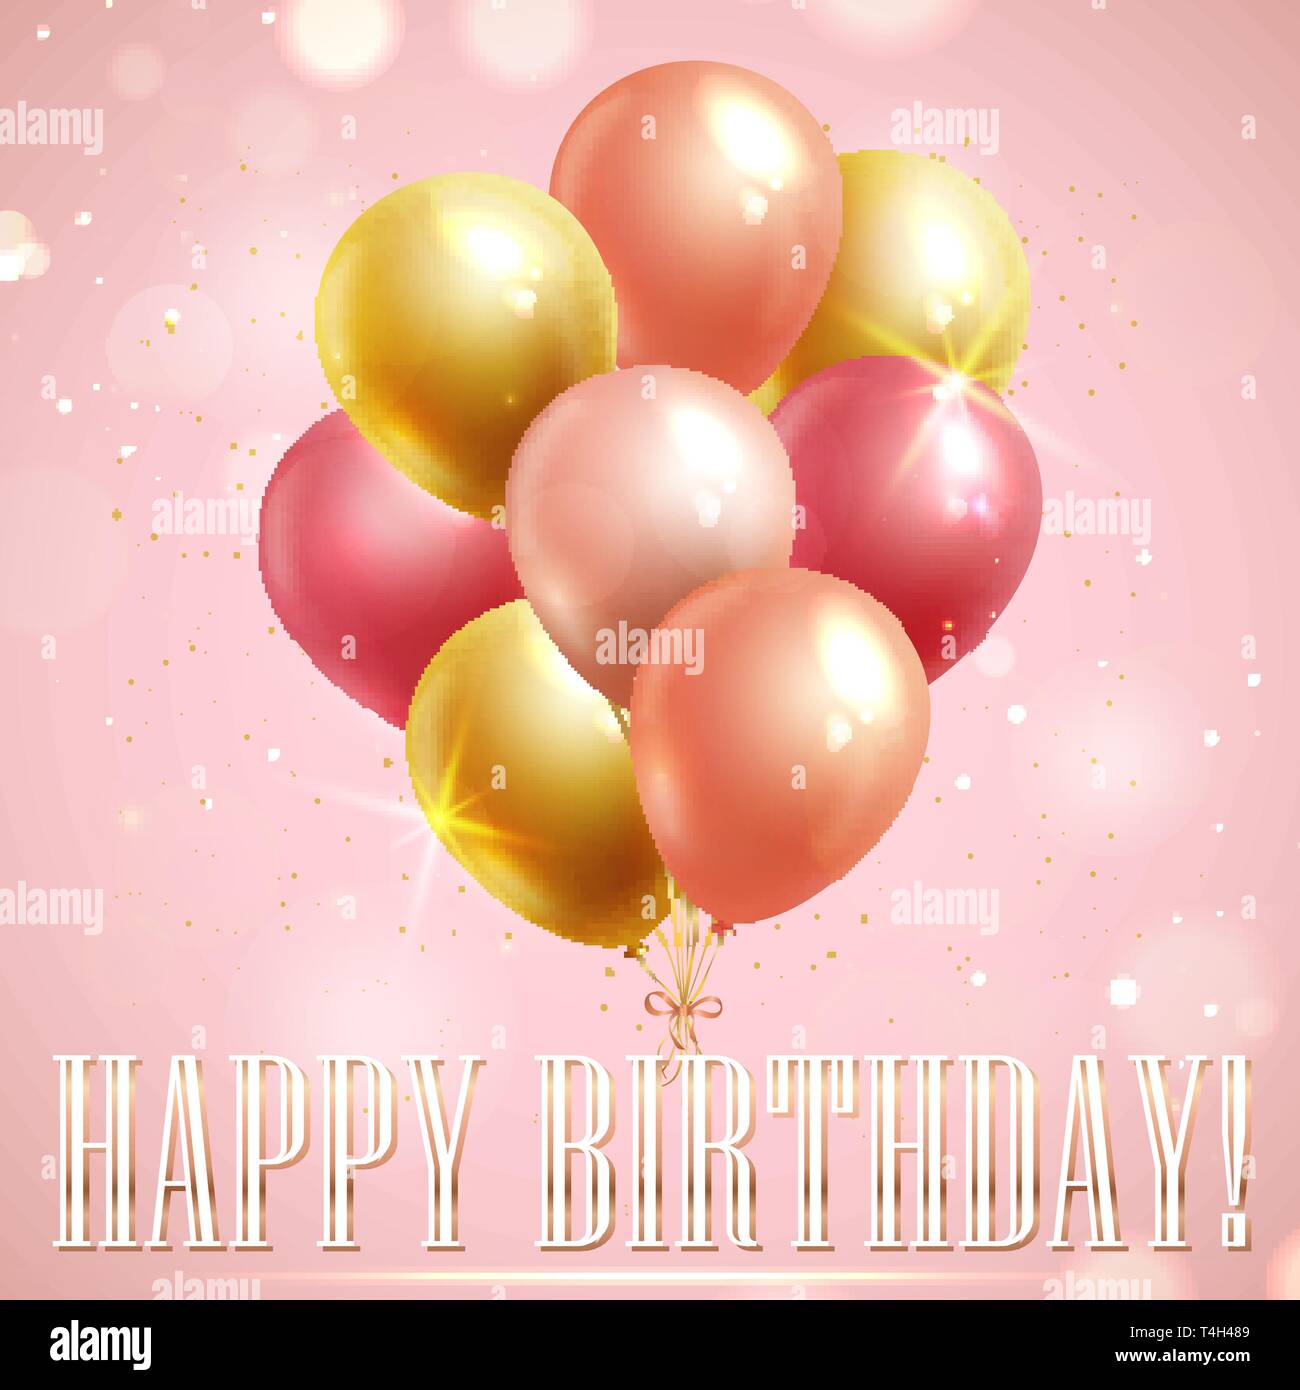 Geburtstag Grußkarte mit rosa und gelbe Luftballons auf glänzenden Hintergrund. Vektor Banner. Stock Vektor